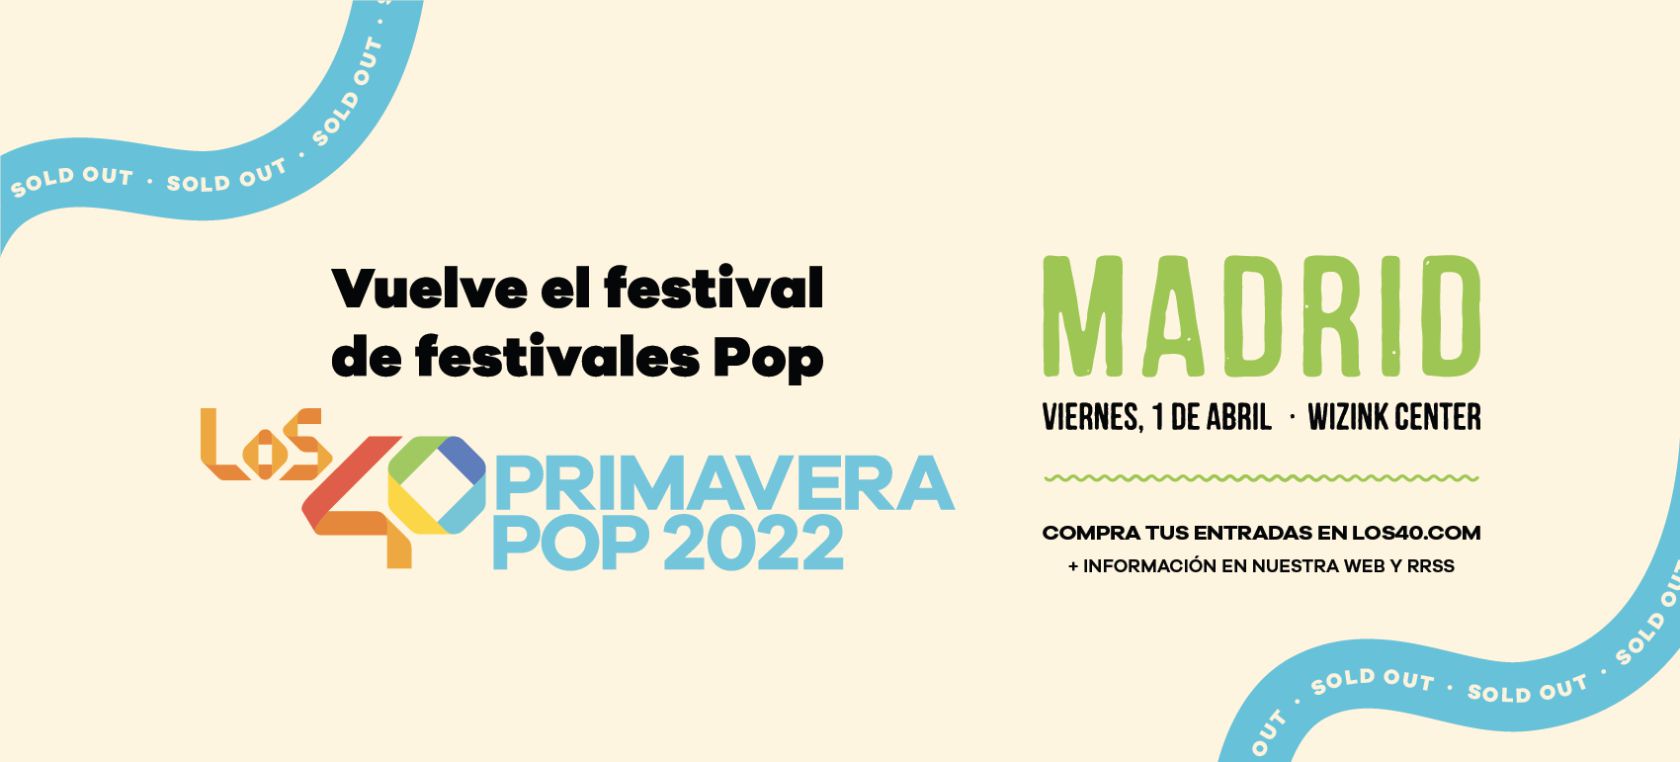 El festival LOS40 Primavera Pop 2022 agota sus entradas para Madrid